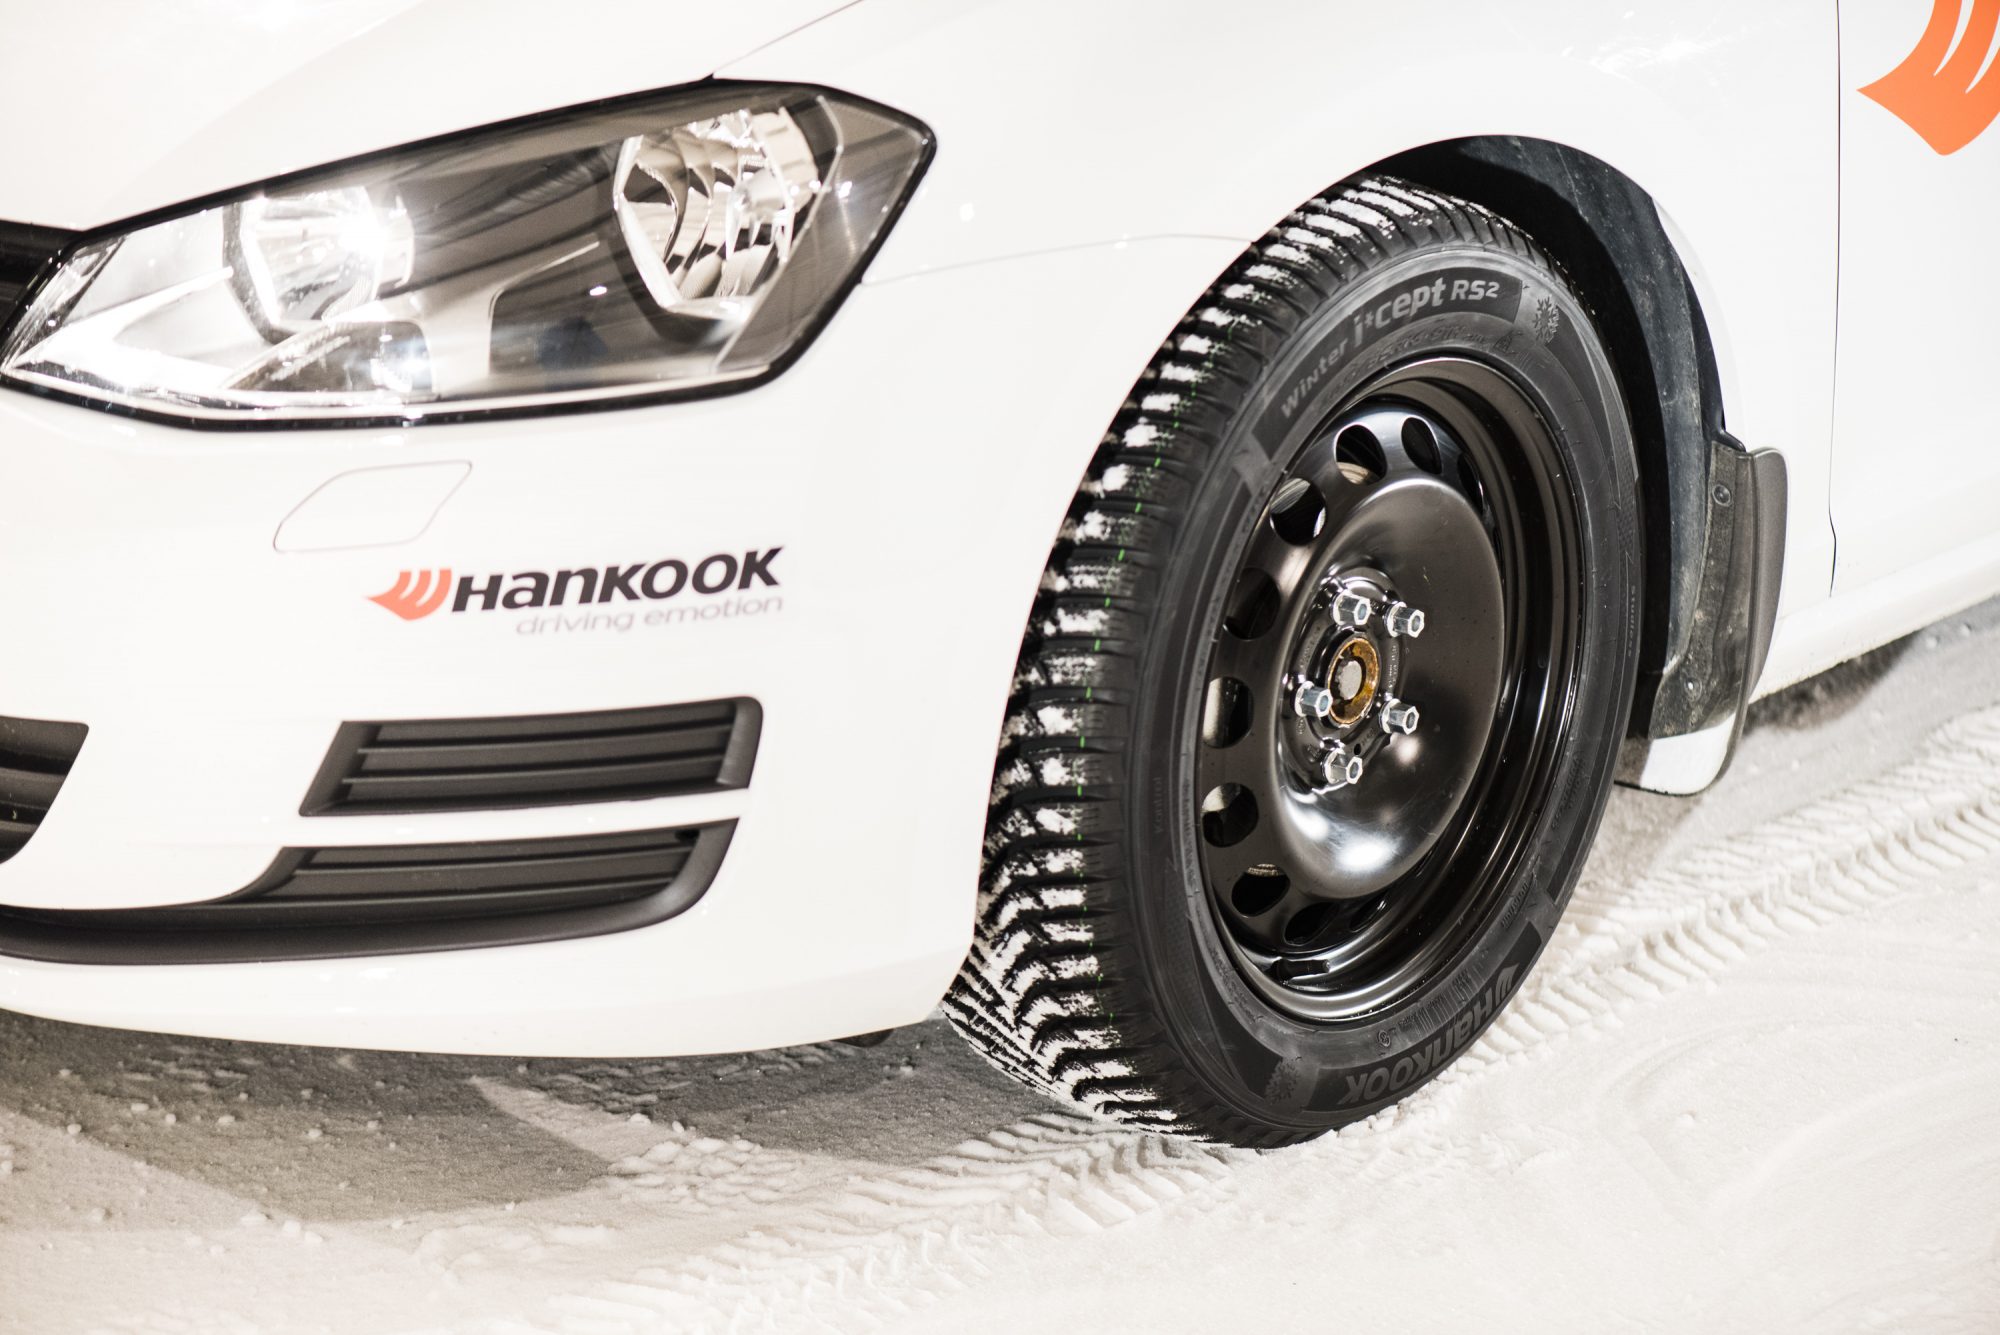 Wie gut sind Hankook Winterreifen - 5 Vorteile und 6 Reifenempfehlungen - Hankook W452 Winter icept RS2